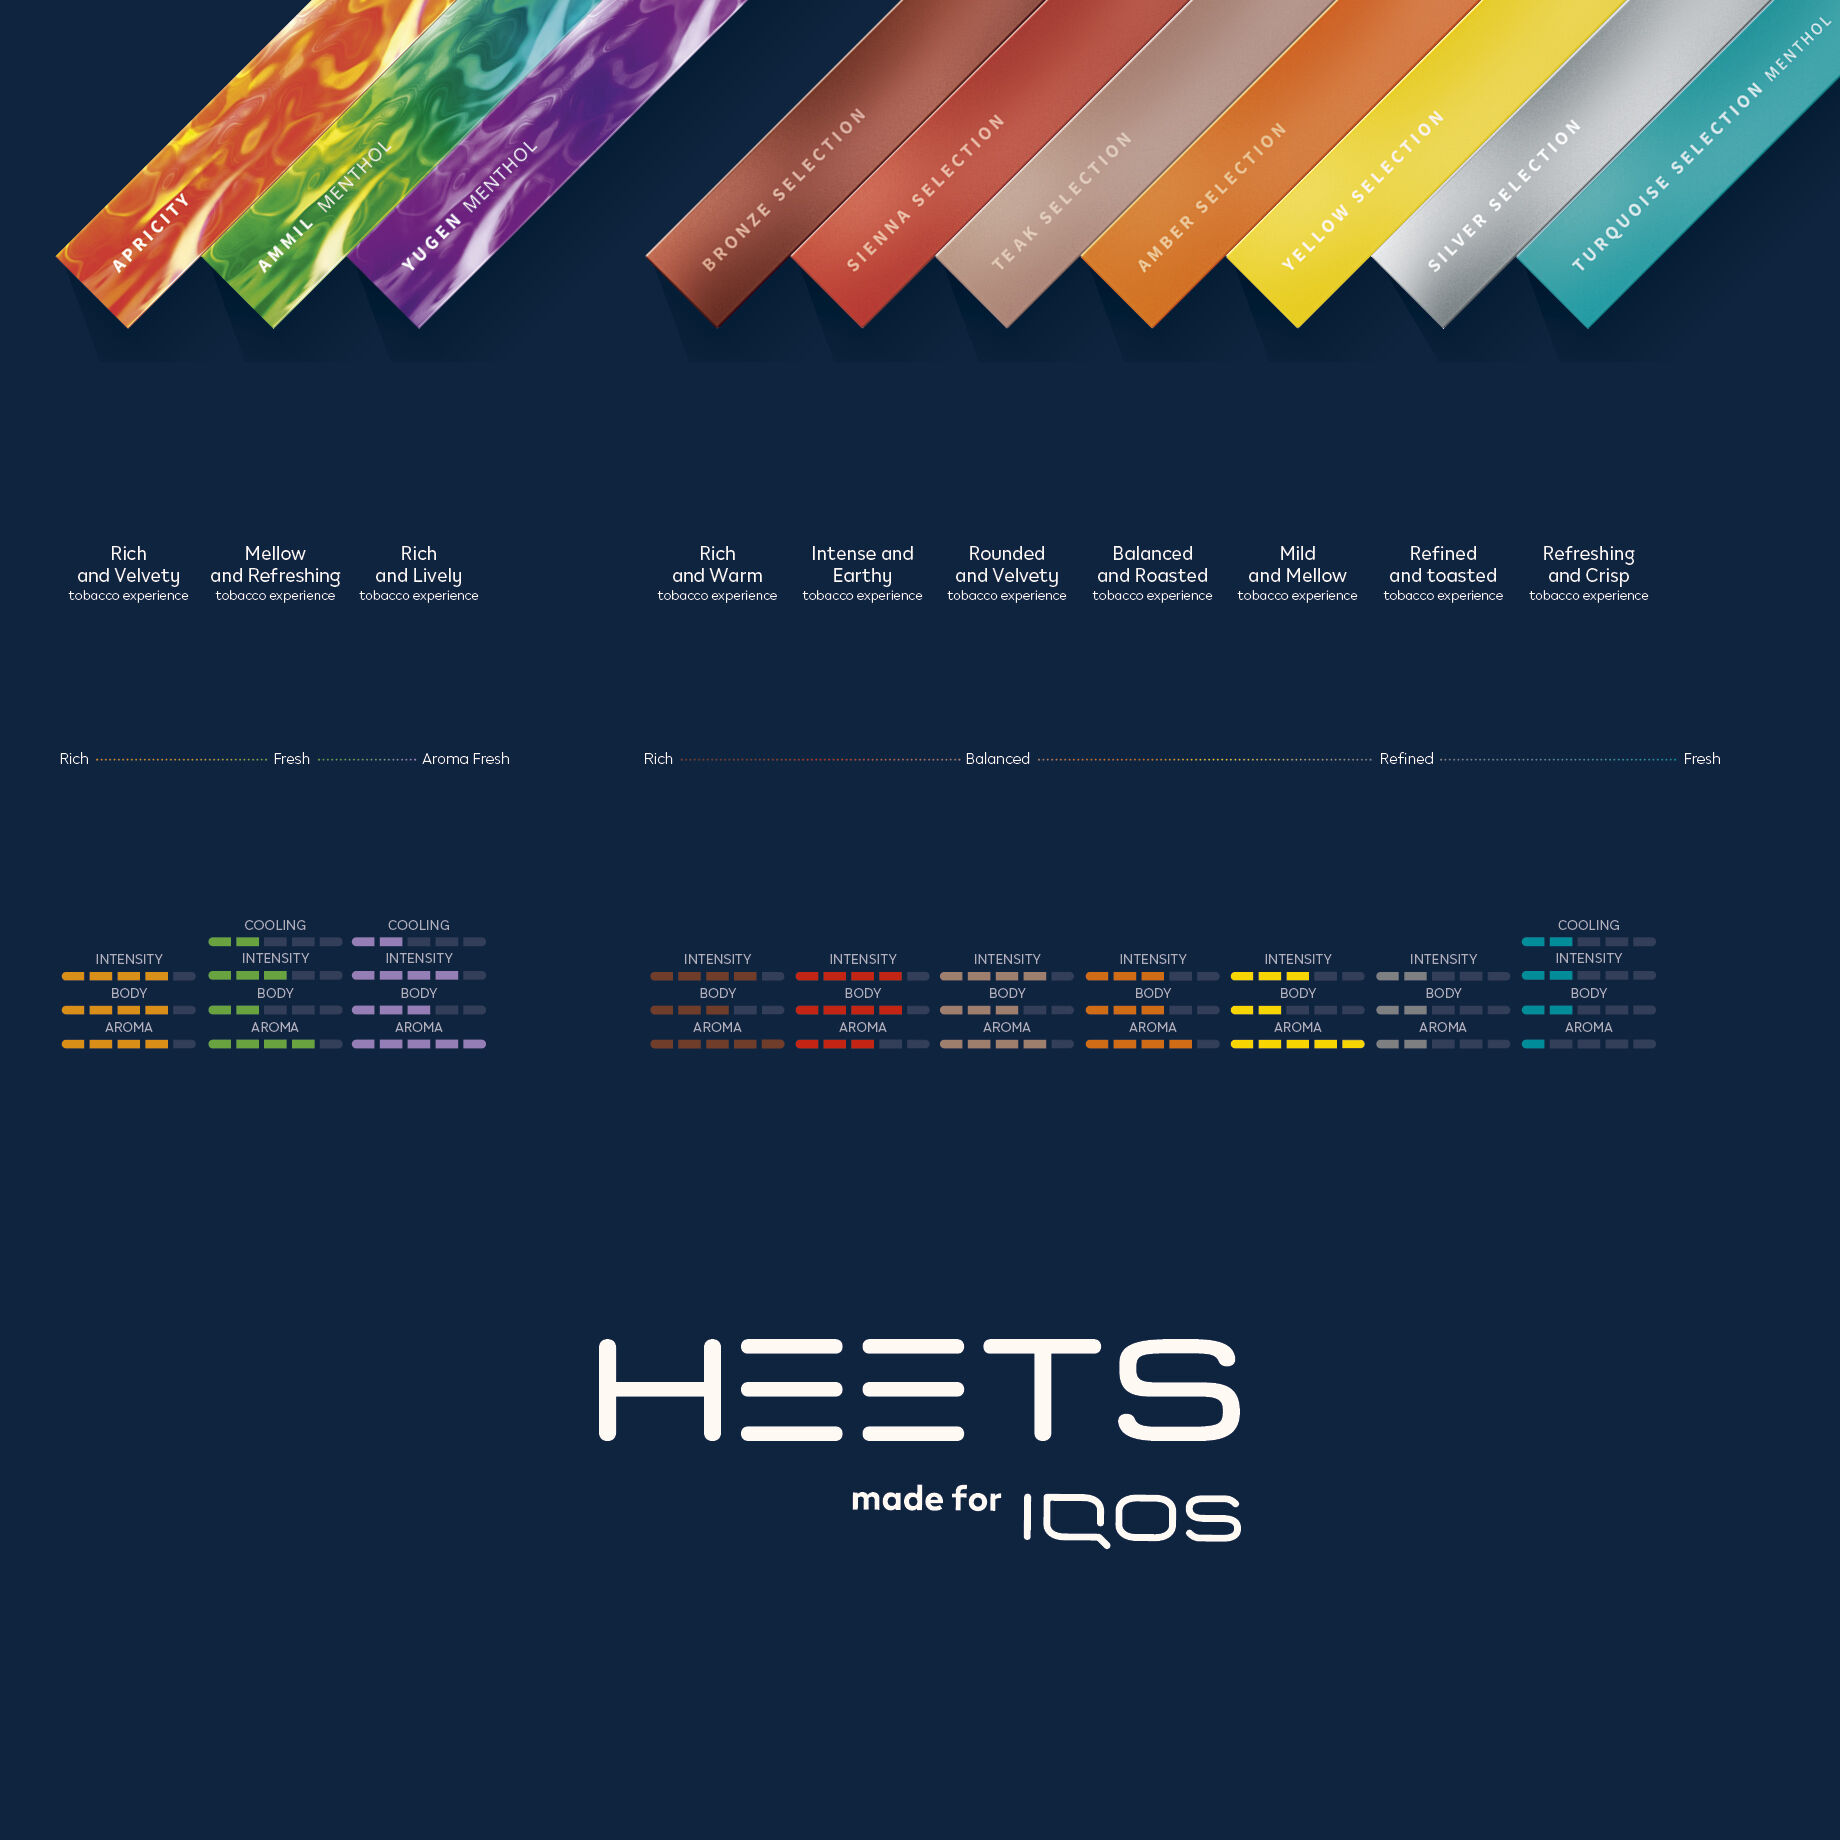 Buy IQOS HEETS Online Heatsticks New HEETS Bronze Selection